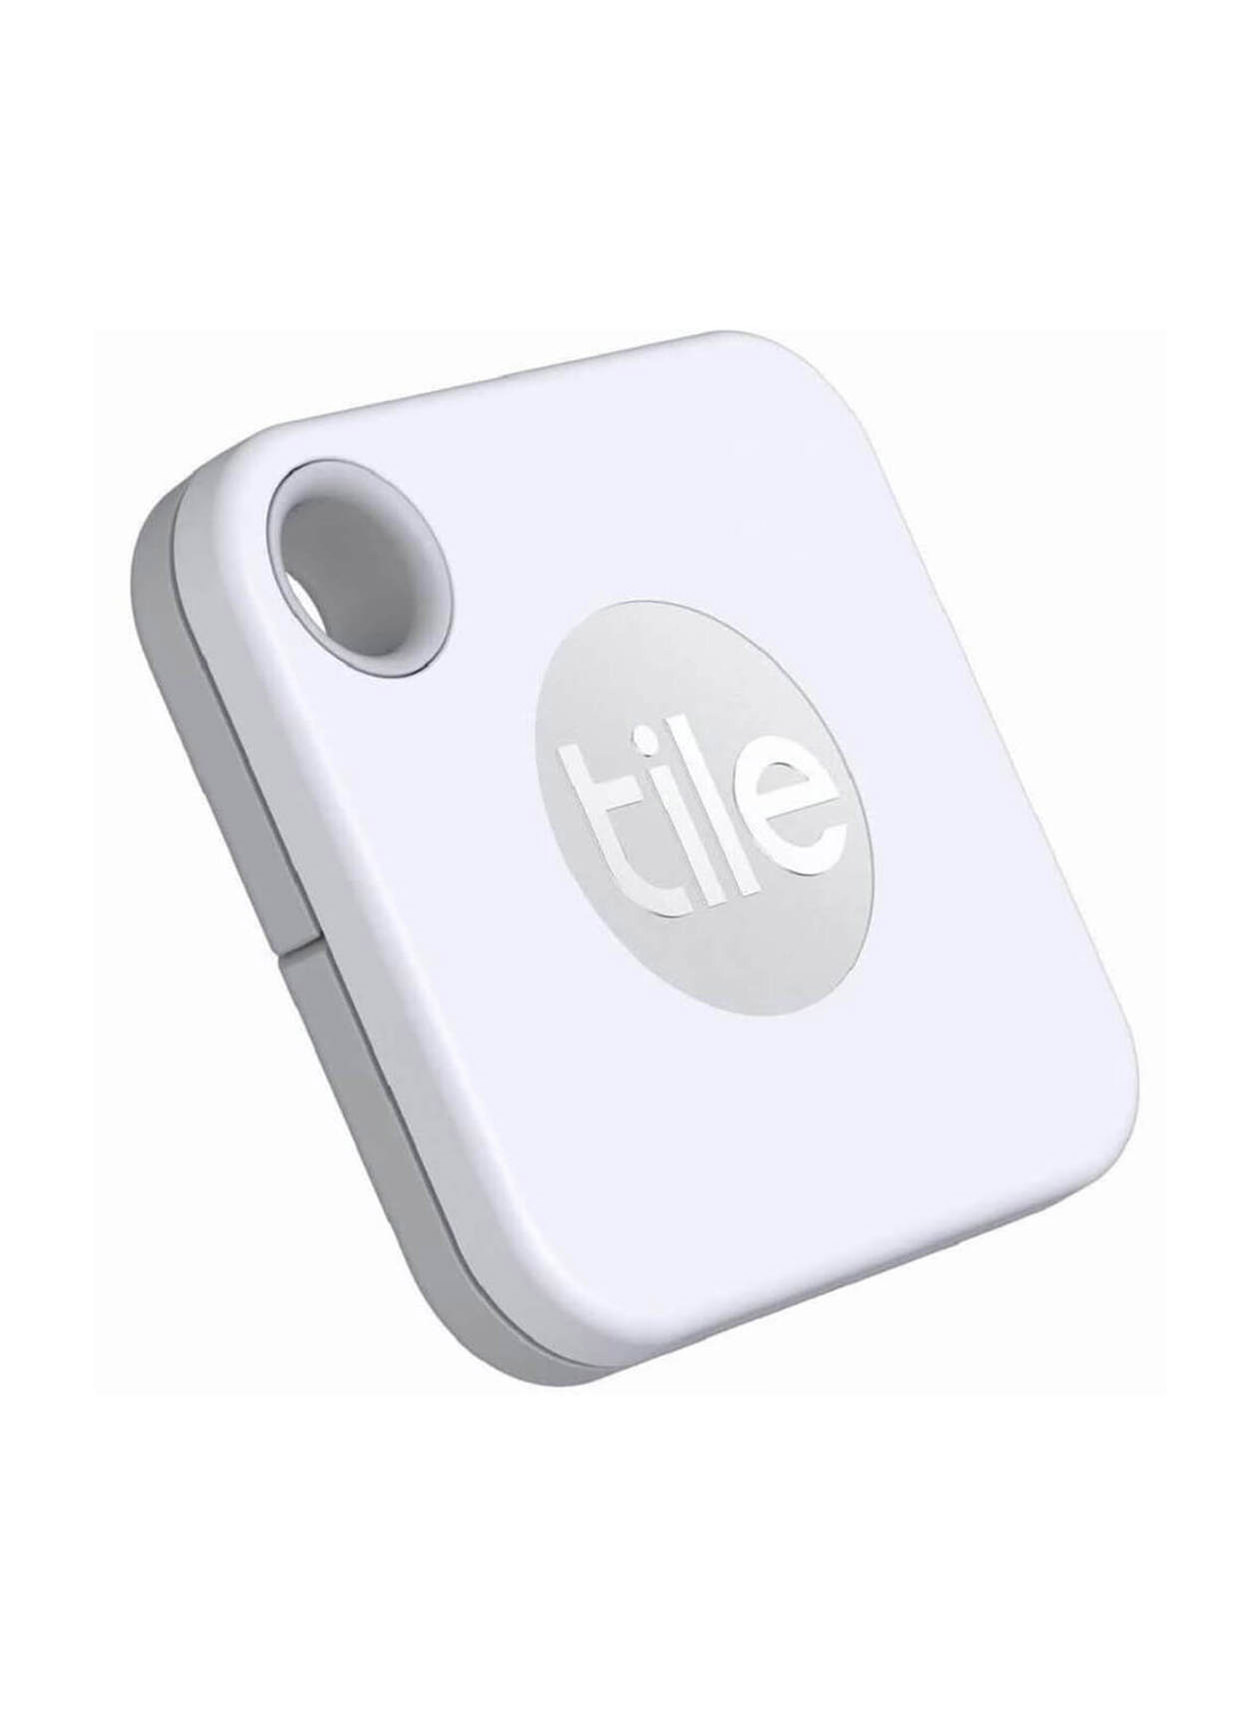 Tile White Mate - Regular Packaging